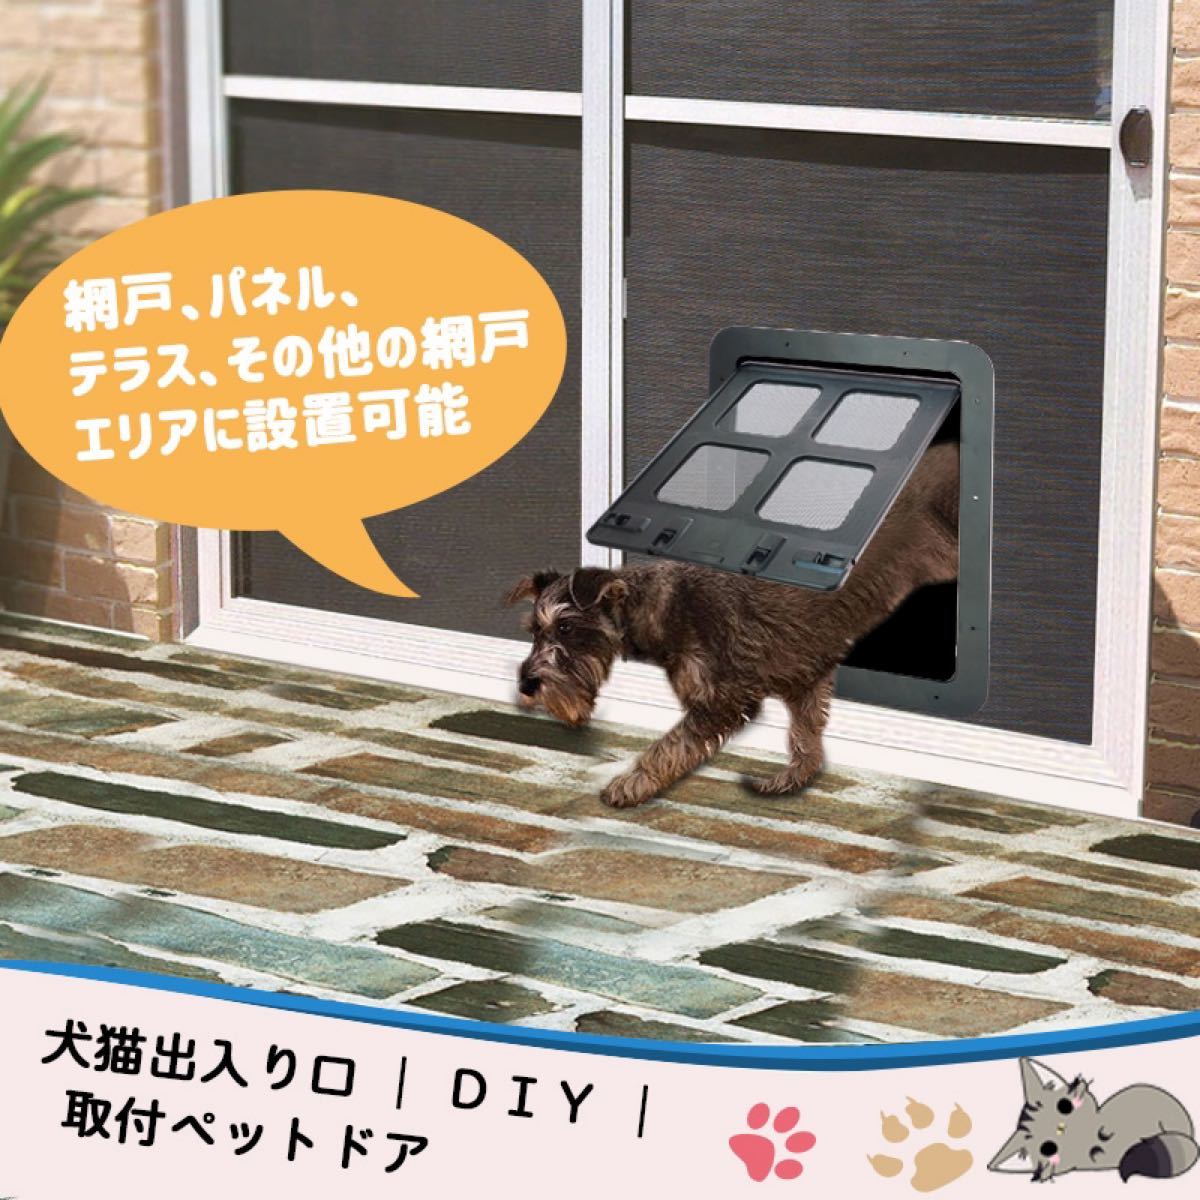 犬ドア ペットネコキャットのドア 網戸専用 ペット用ドア 犬猫入り口 取付簡単 挿し込む式ドア ロックドア ブラック